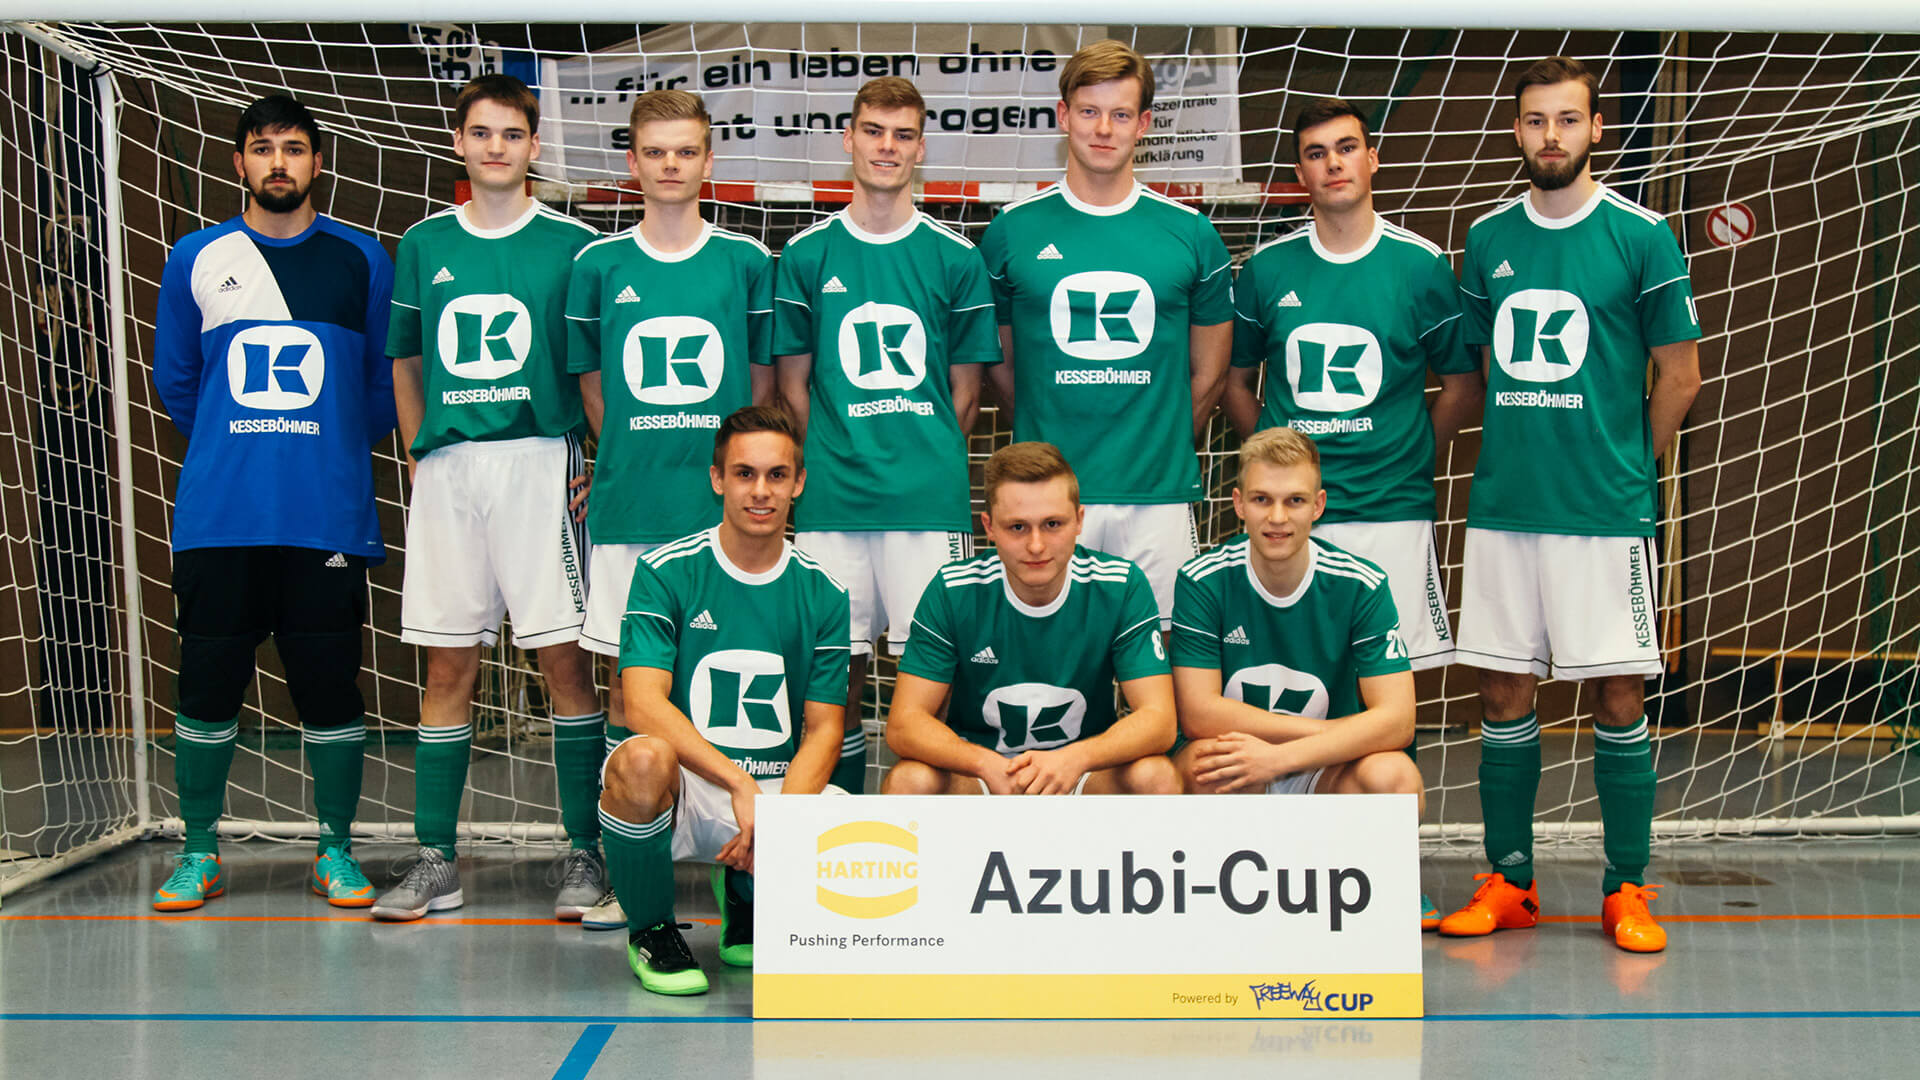 HARTING Azubi-Cup in Espelkamp